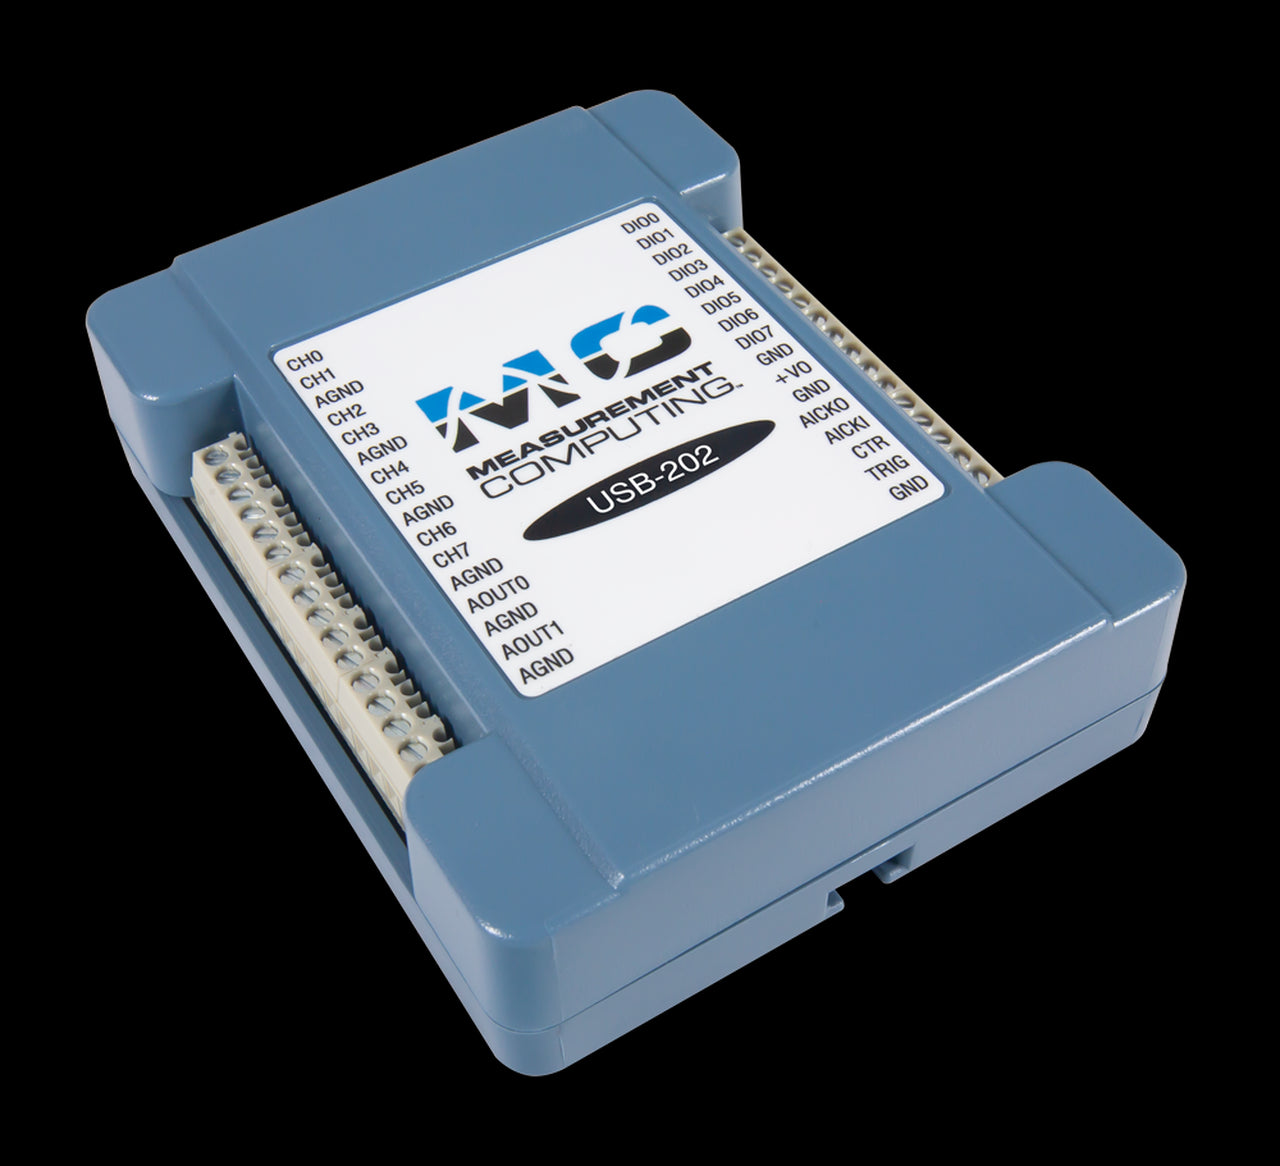 MCC USB-202 12-bit, 100 kS/s Single Gain Multifunction USB DAQ Device